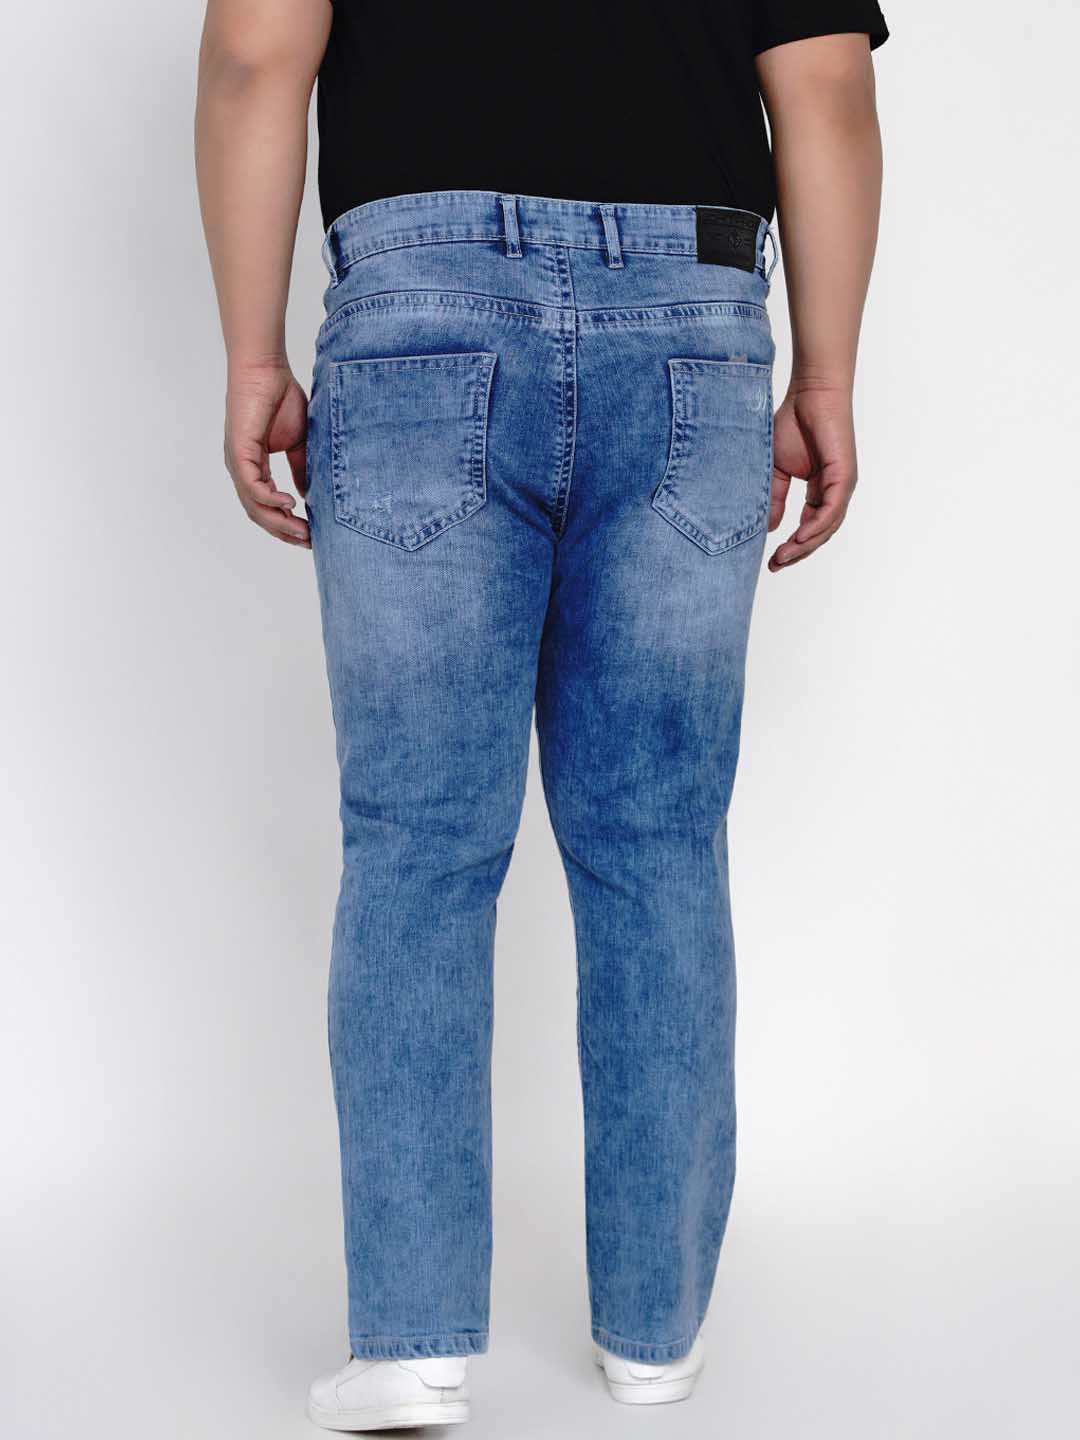 bottomwear/jeans/JPJ12112/jpj12112-4.jpg